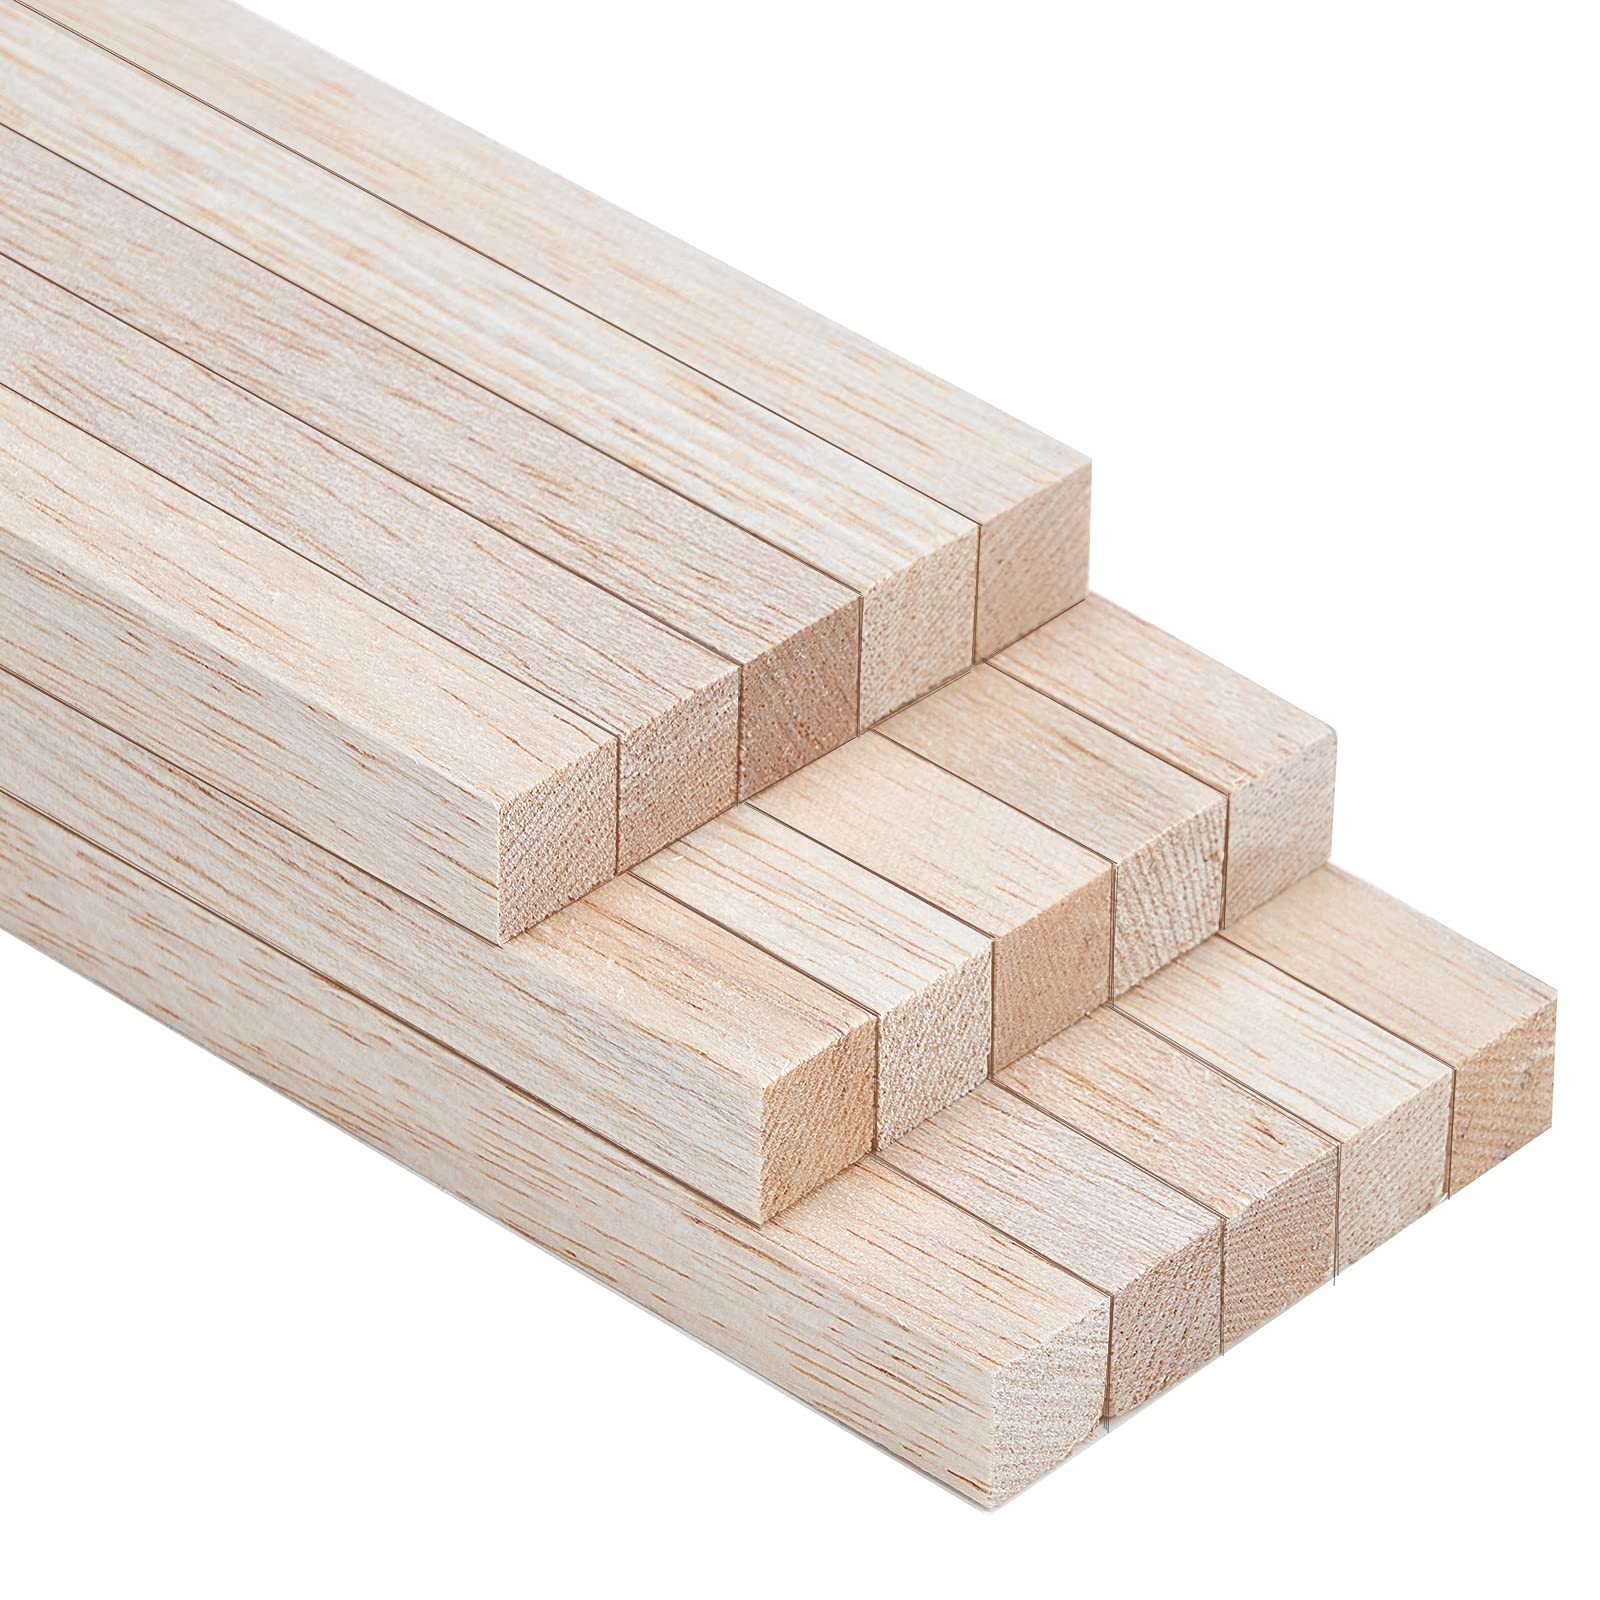 Varilla madera balsa x 1mt. de 5 x 5 mm.